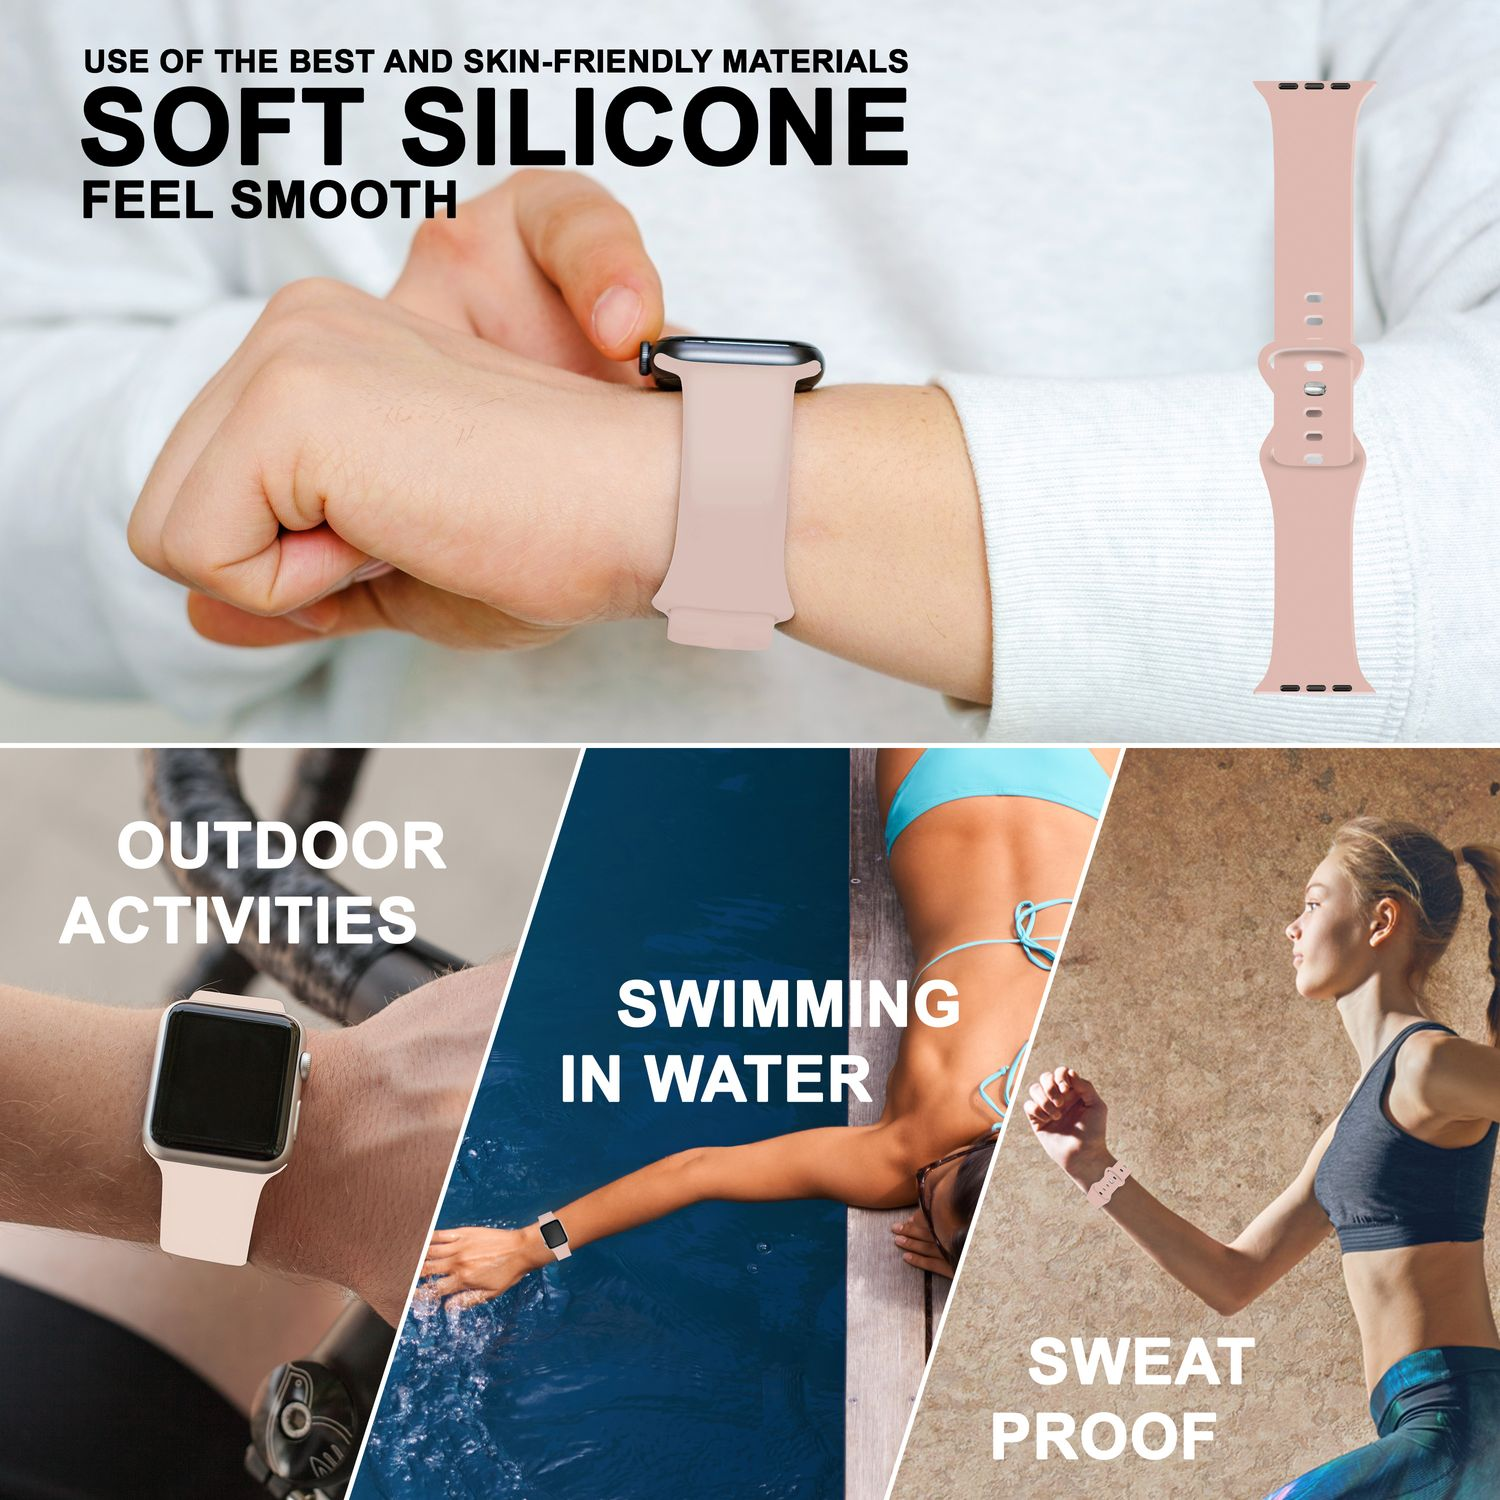 NALIA Smartwatch Silikon Armband, Watch Apple, Pink 38mm/40mm/41mm, Apple Ersatzarmband